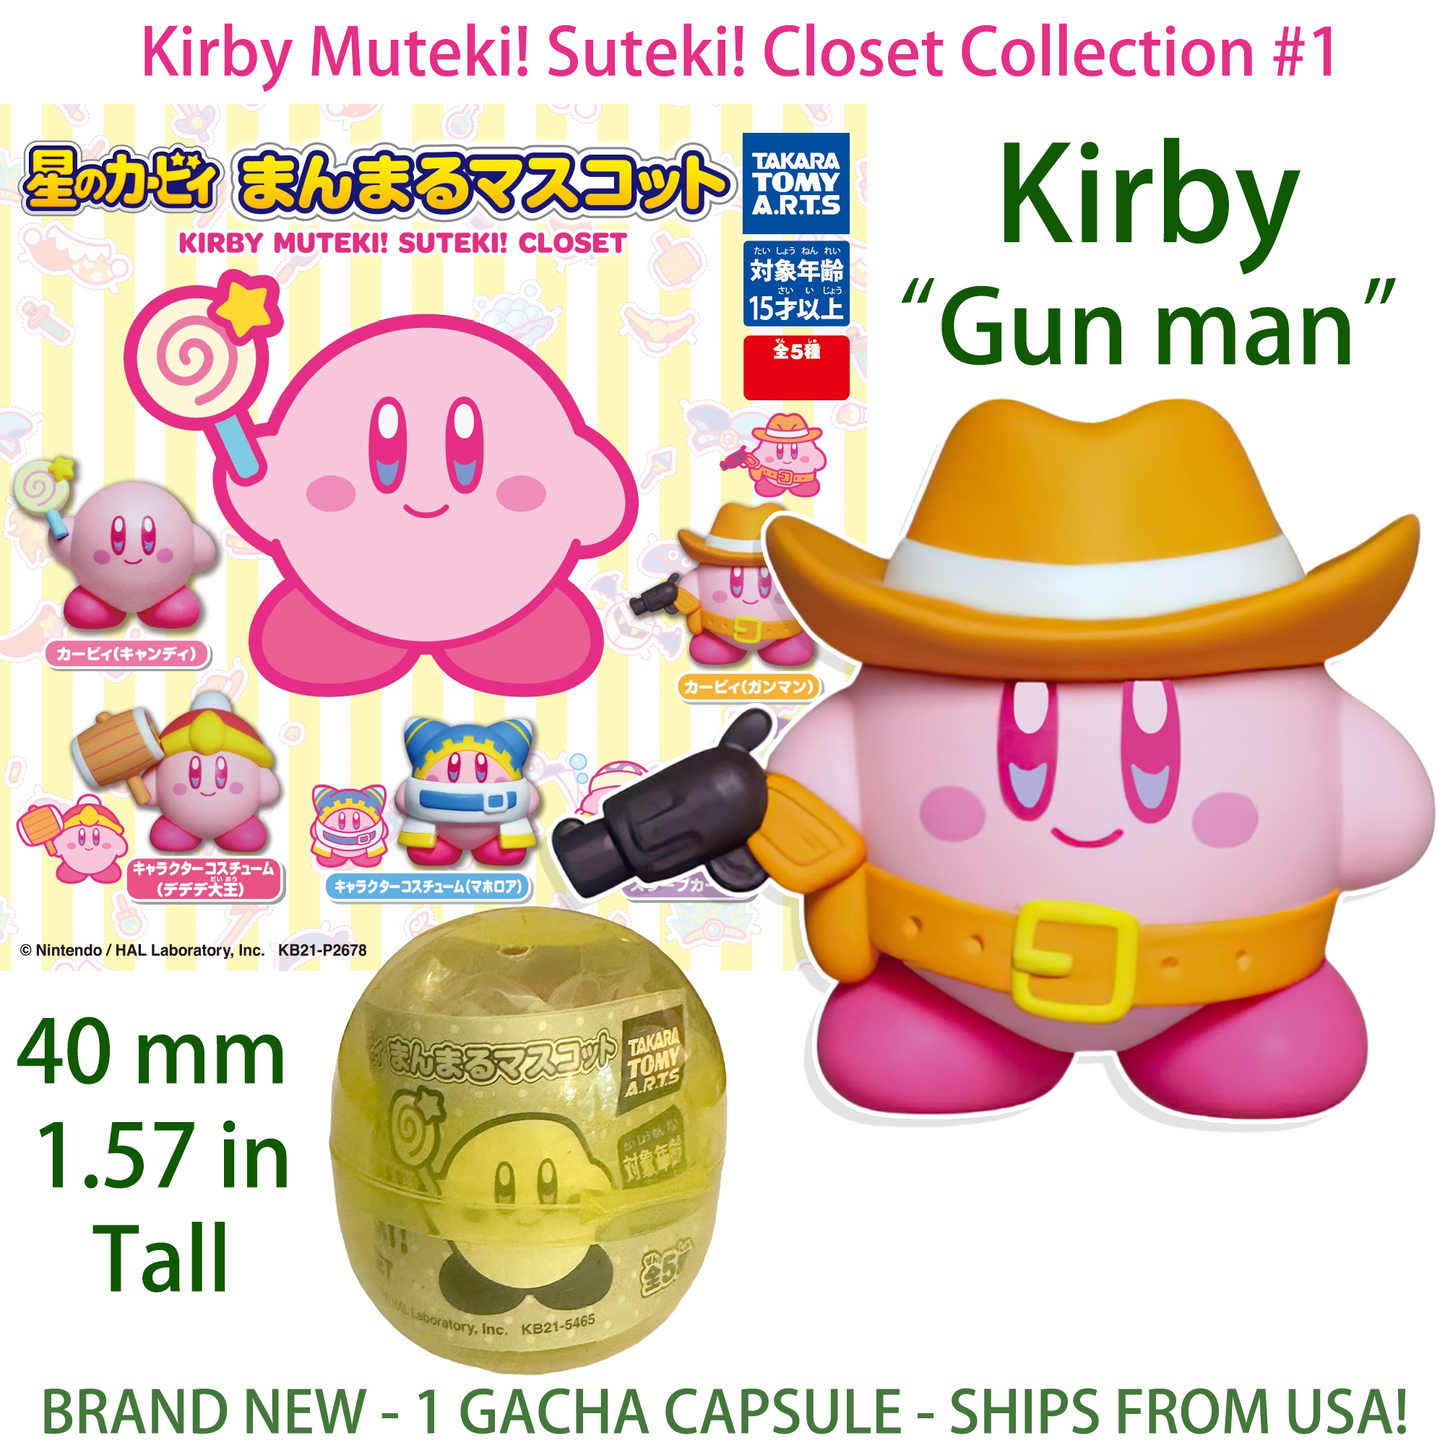 KIRBY GUN MAN - KIRBY'S SUTEKI! MUTEKI! Gashapon Capsule Figure (NEW) TAKARA